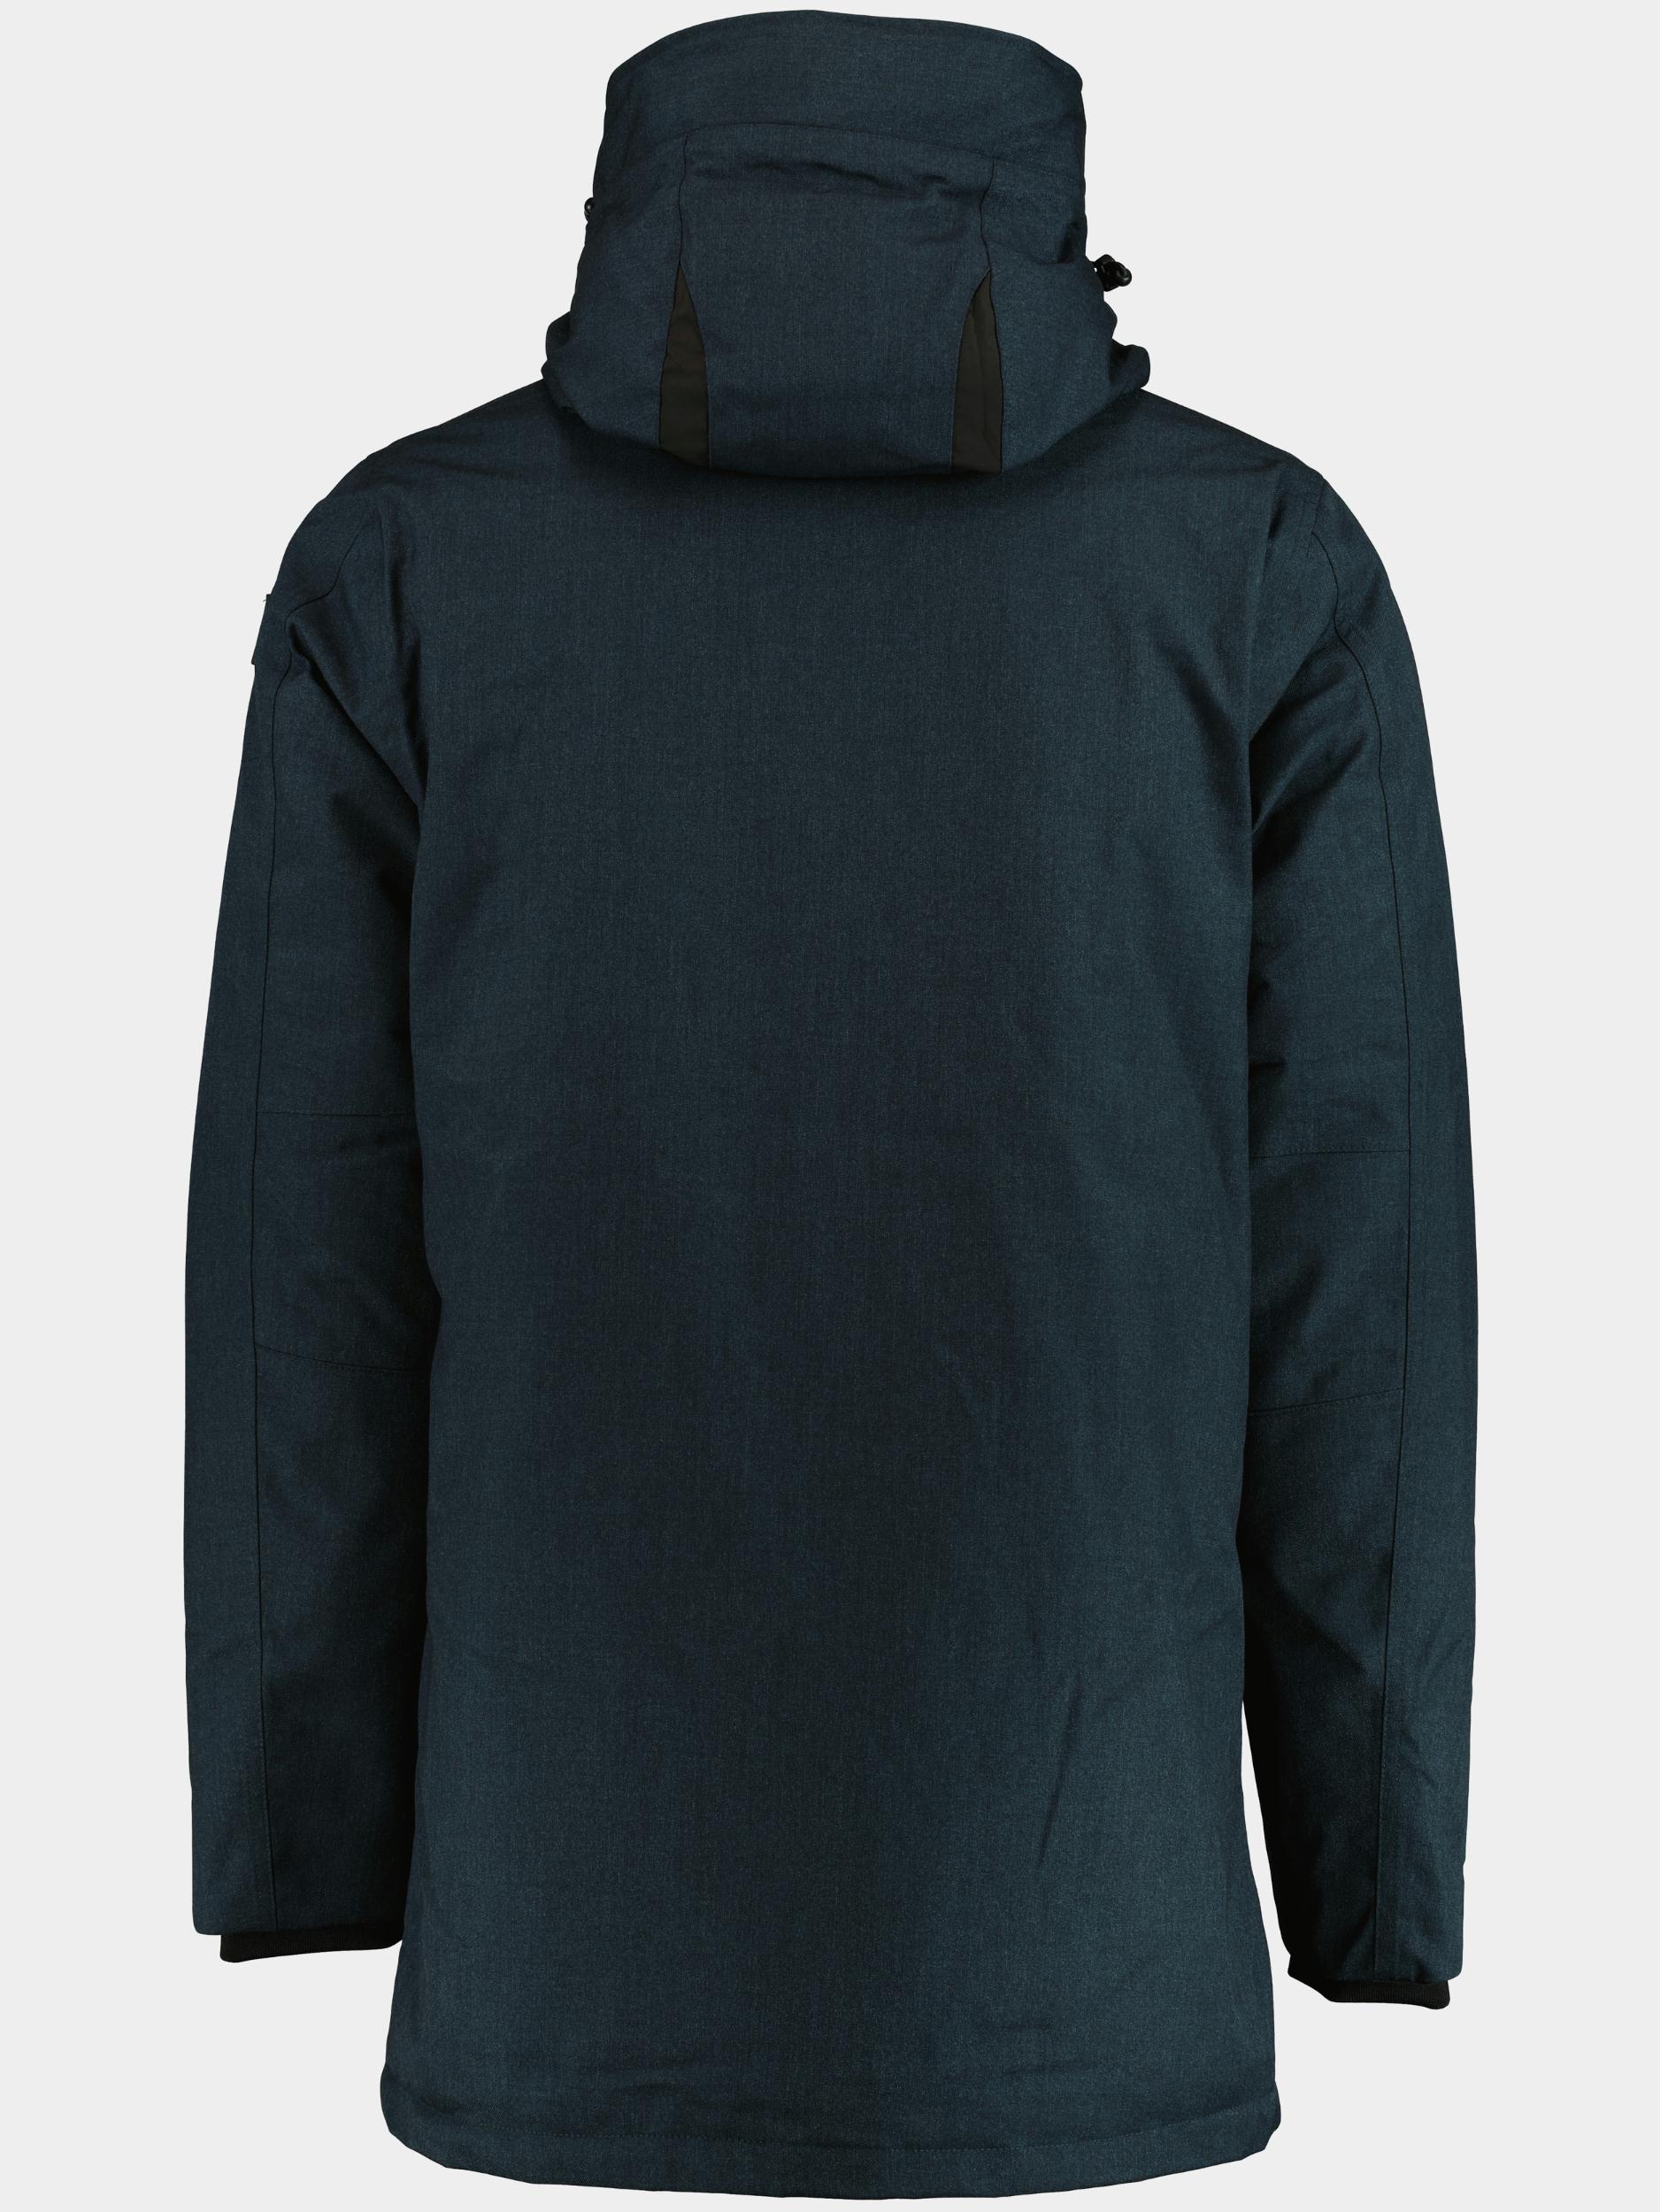 Vanguard Winterjack Blauw Parka jacket MELANGE TWILL WH VJA2209177/5281